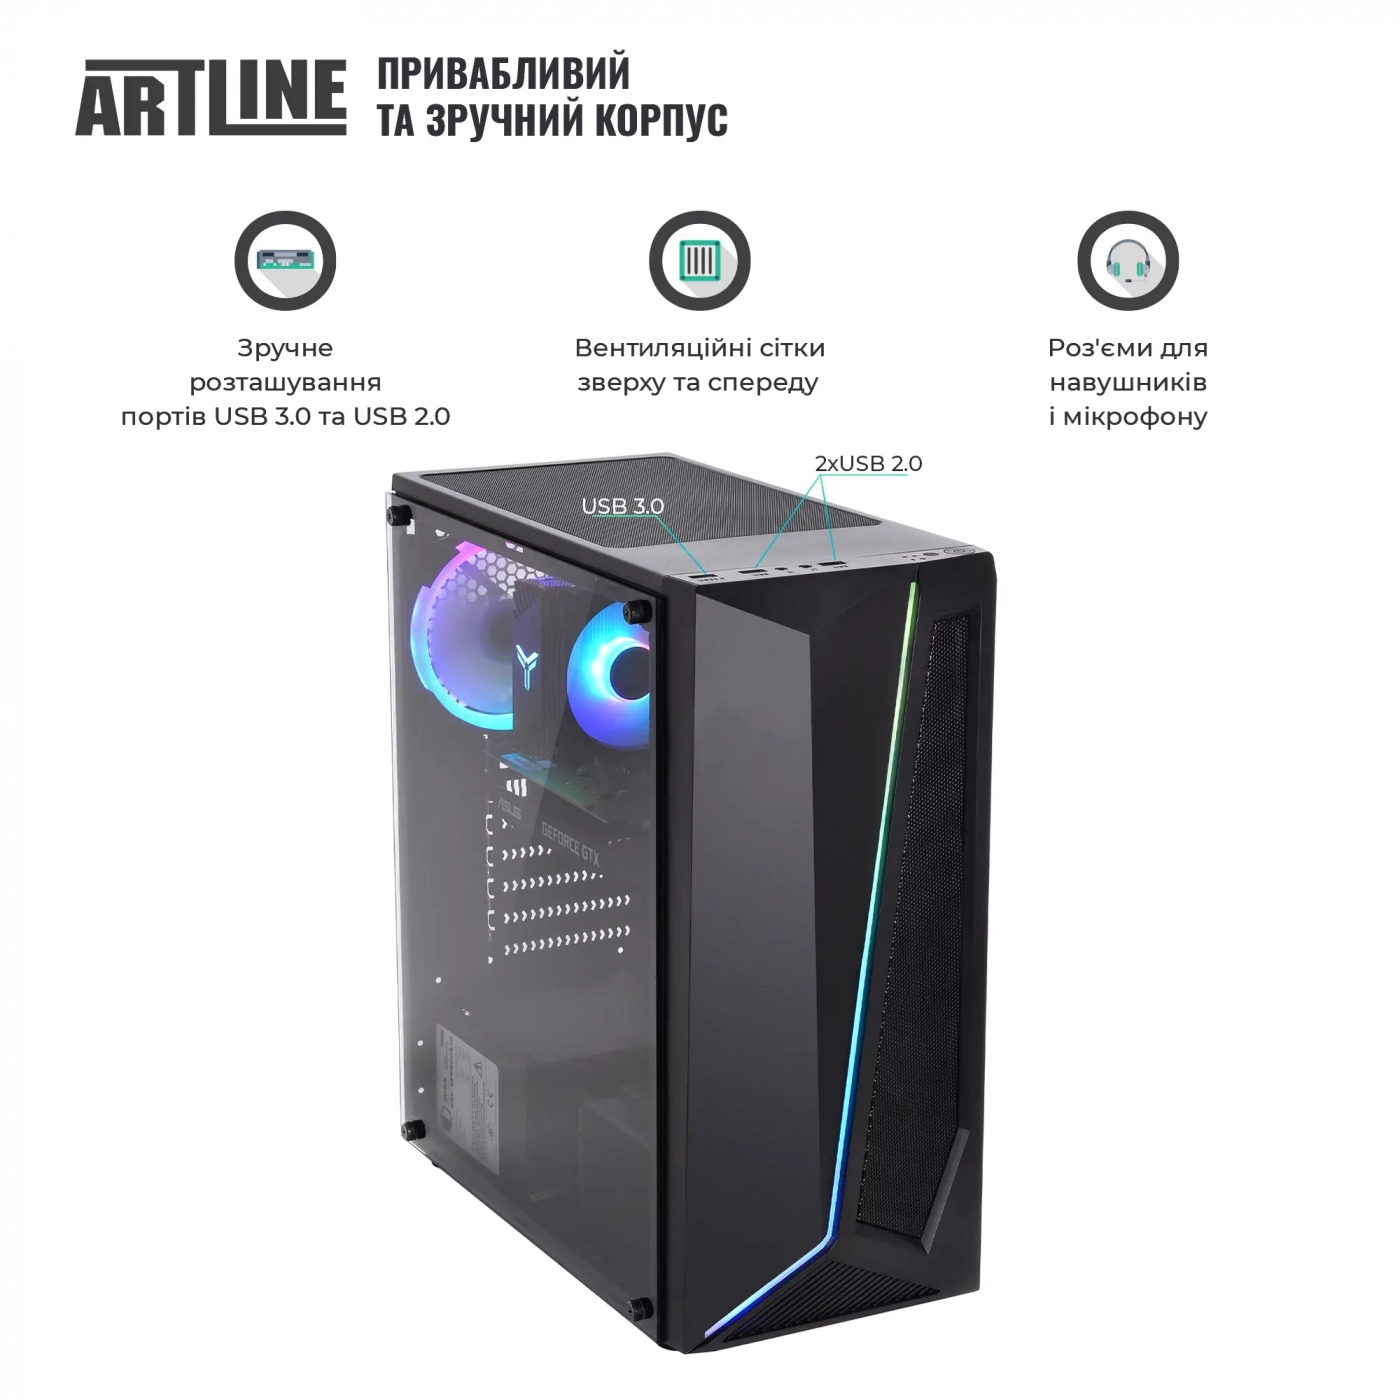 Купить Компьютер ARTLINE Gaming X51v26 - фото 2